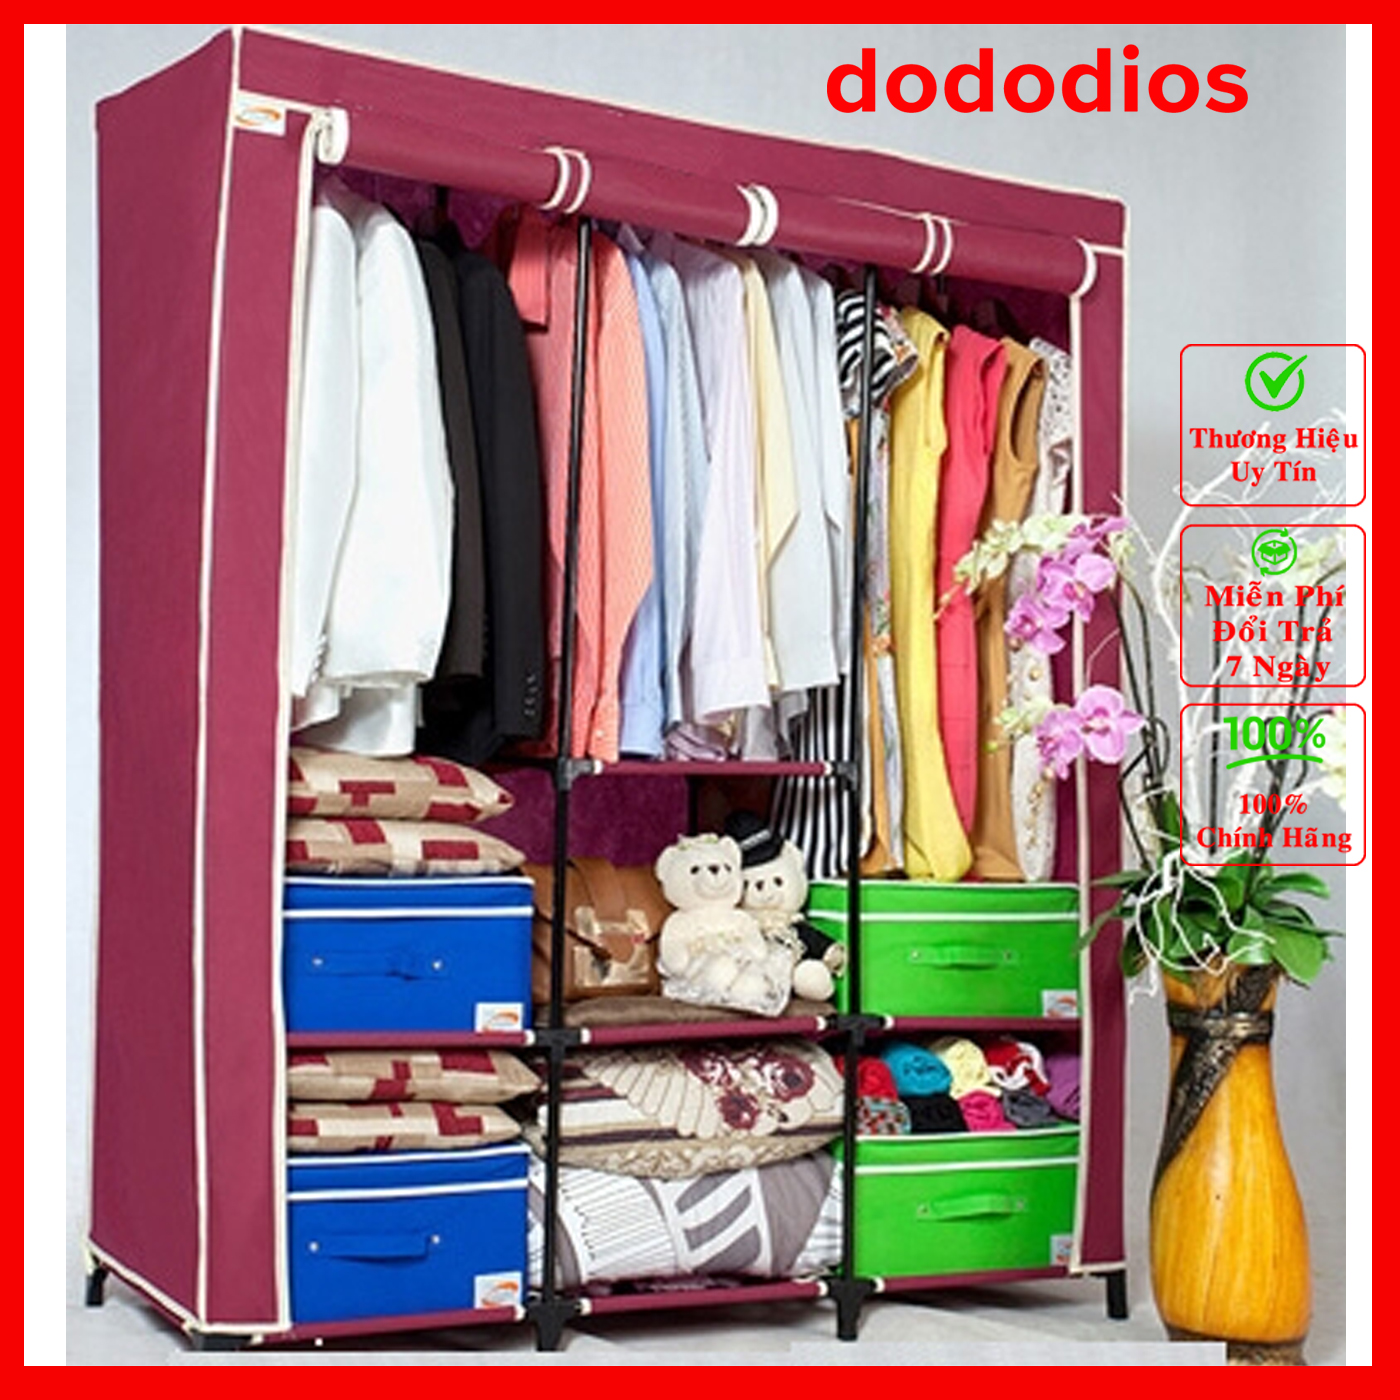 Tủ vải đựng quần áo 3 buồng 8 ngăn khung nhôm dễ lắp ráp tiện lợi - Chính hãng dododios